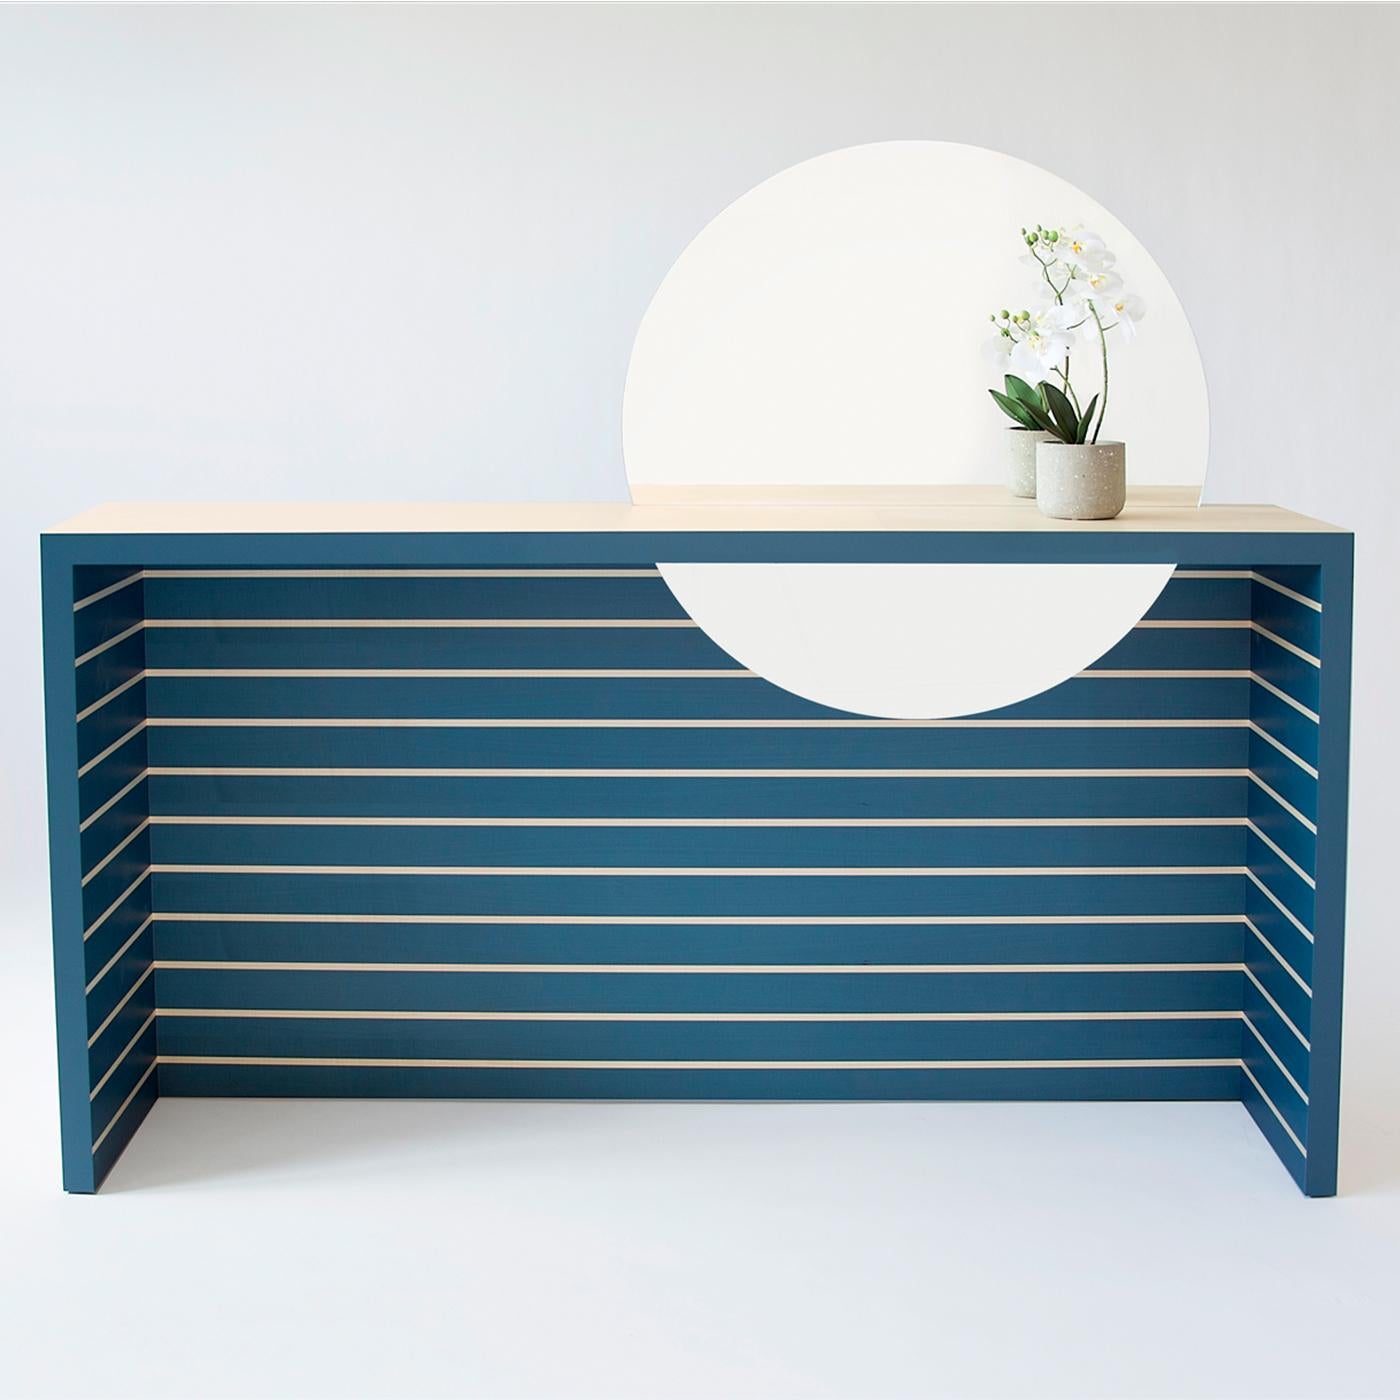 Diese von Sakura Adachi entworfene Konsole besteht aus Ahornholz mit zwei verschiedenen Oberflächen: außen naturbelassen und außen mit blauen und natürlichen Streifen. Die minimale, rechteckige Silhouette weist einen dezentrierten, runden Spiegel